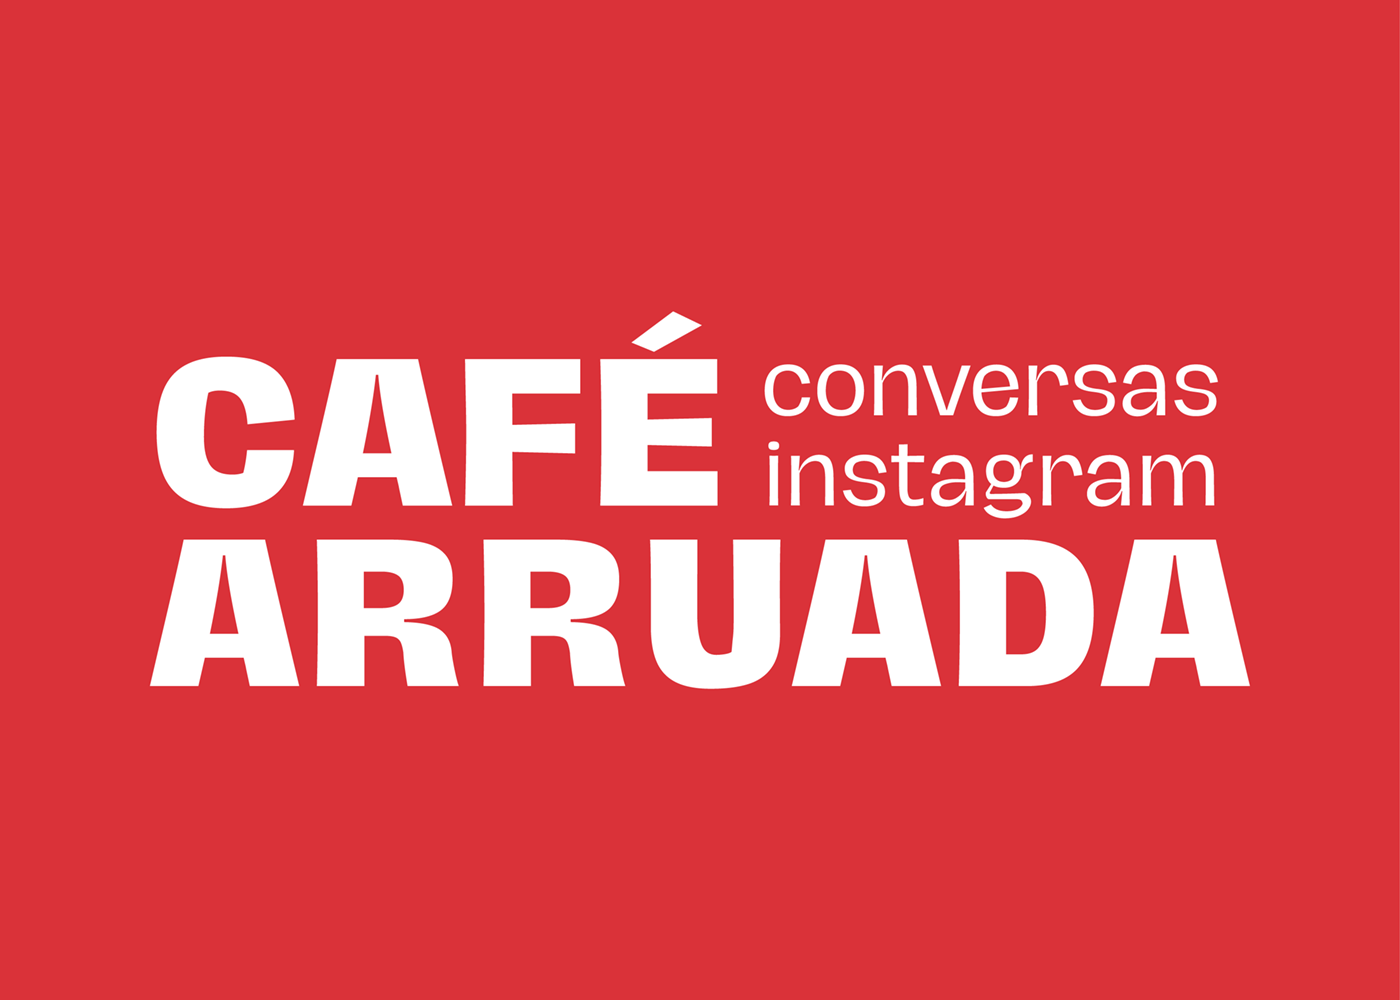 Café Arruada